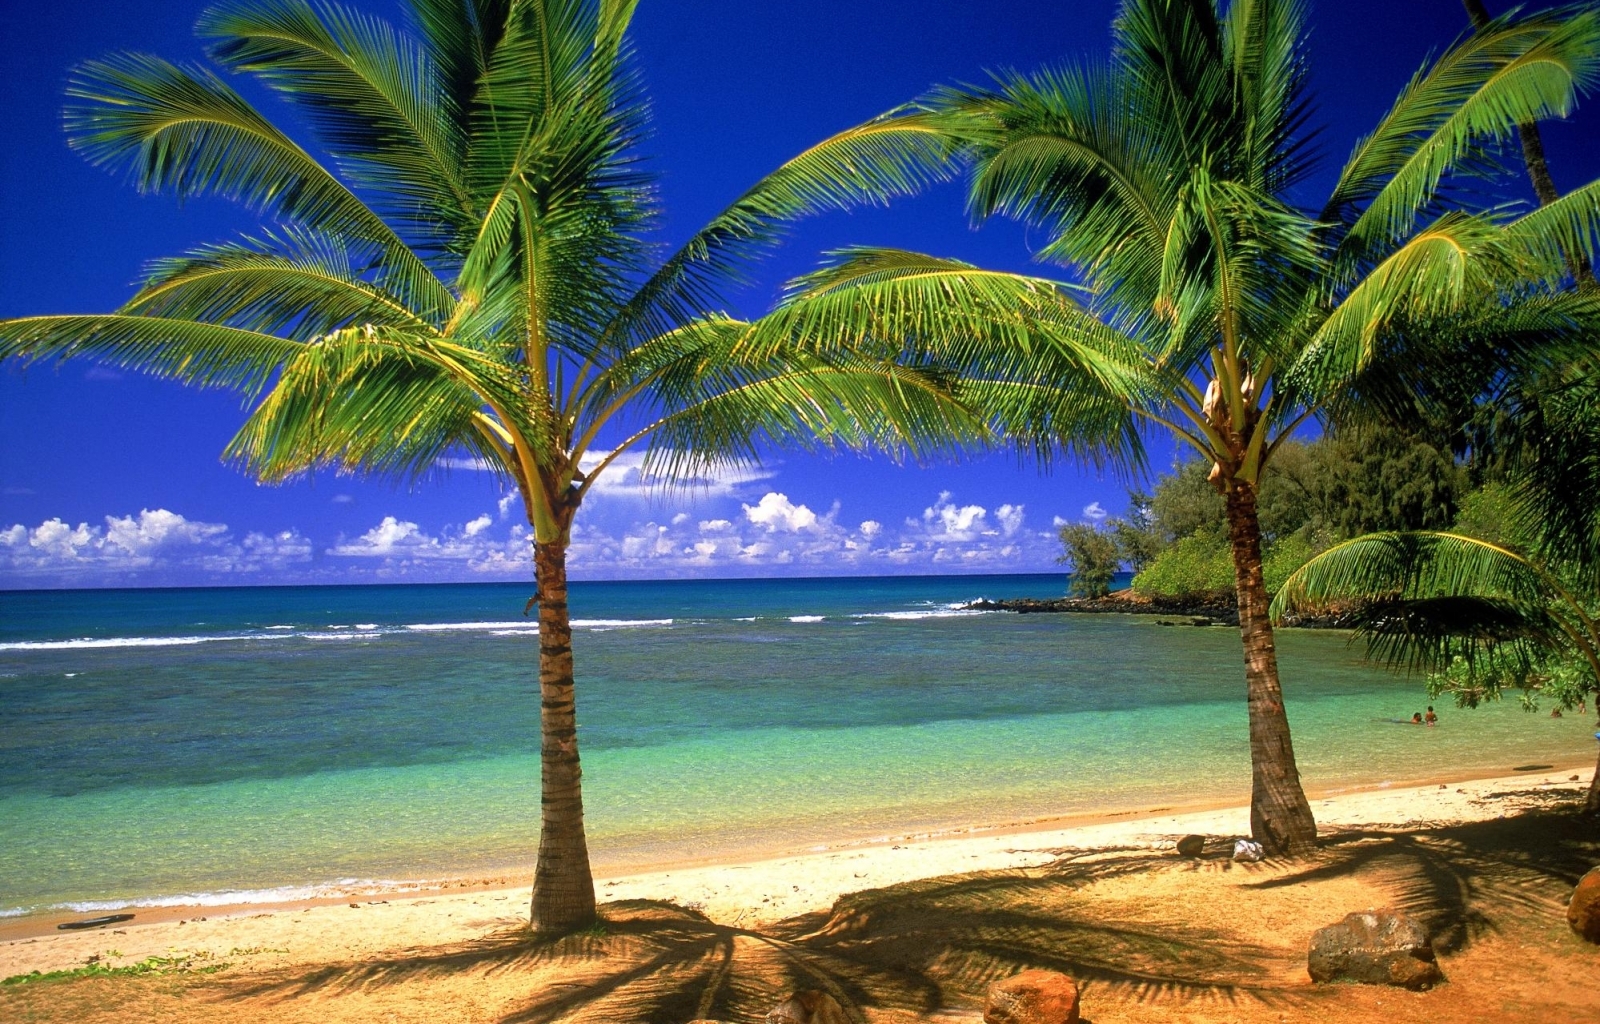 Скачать обои бесплатно Пляж, Пальмы, Море, Пейзаж картинка на рабочий стол ПК